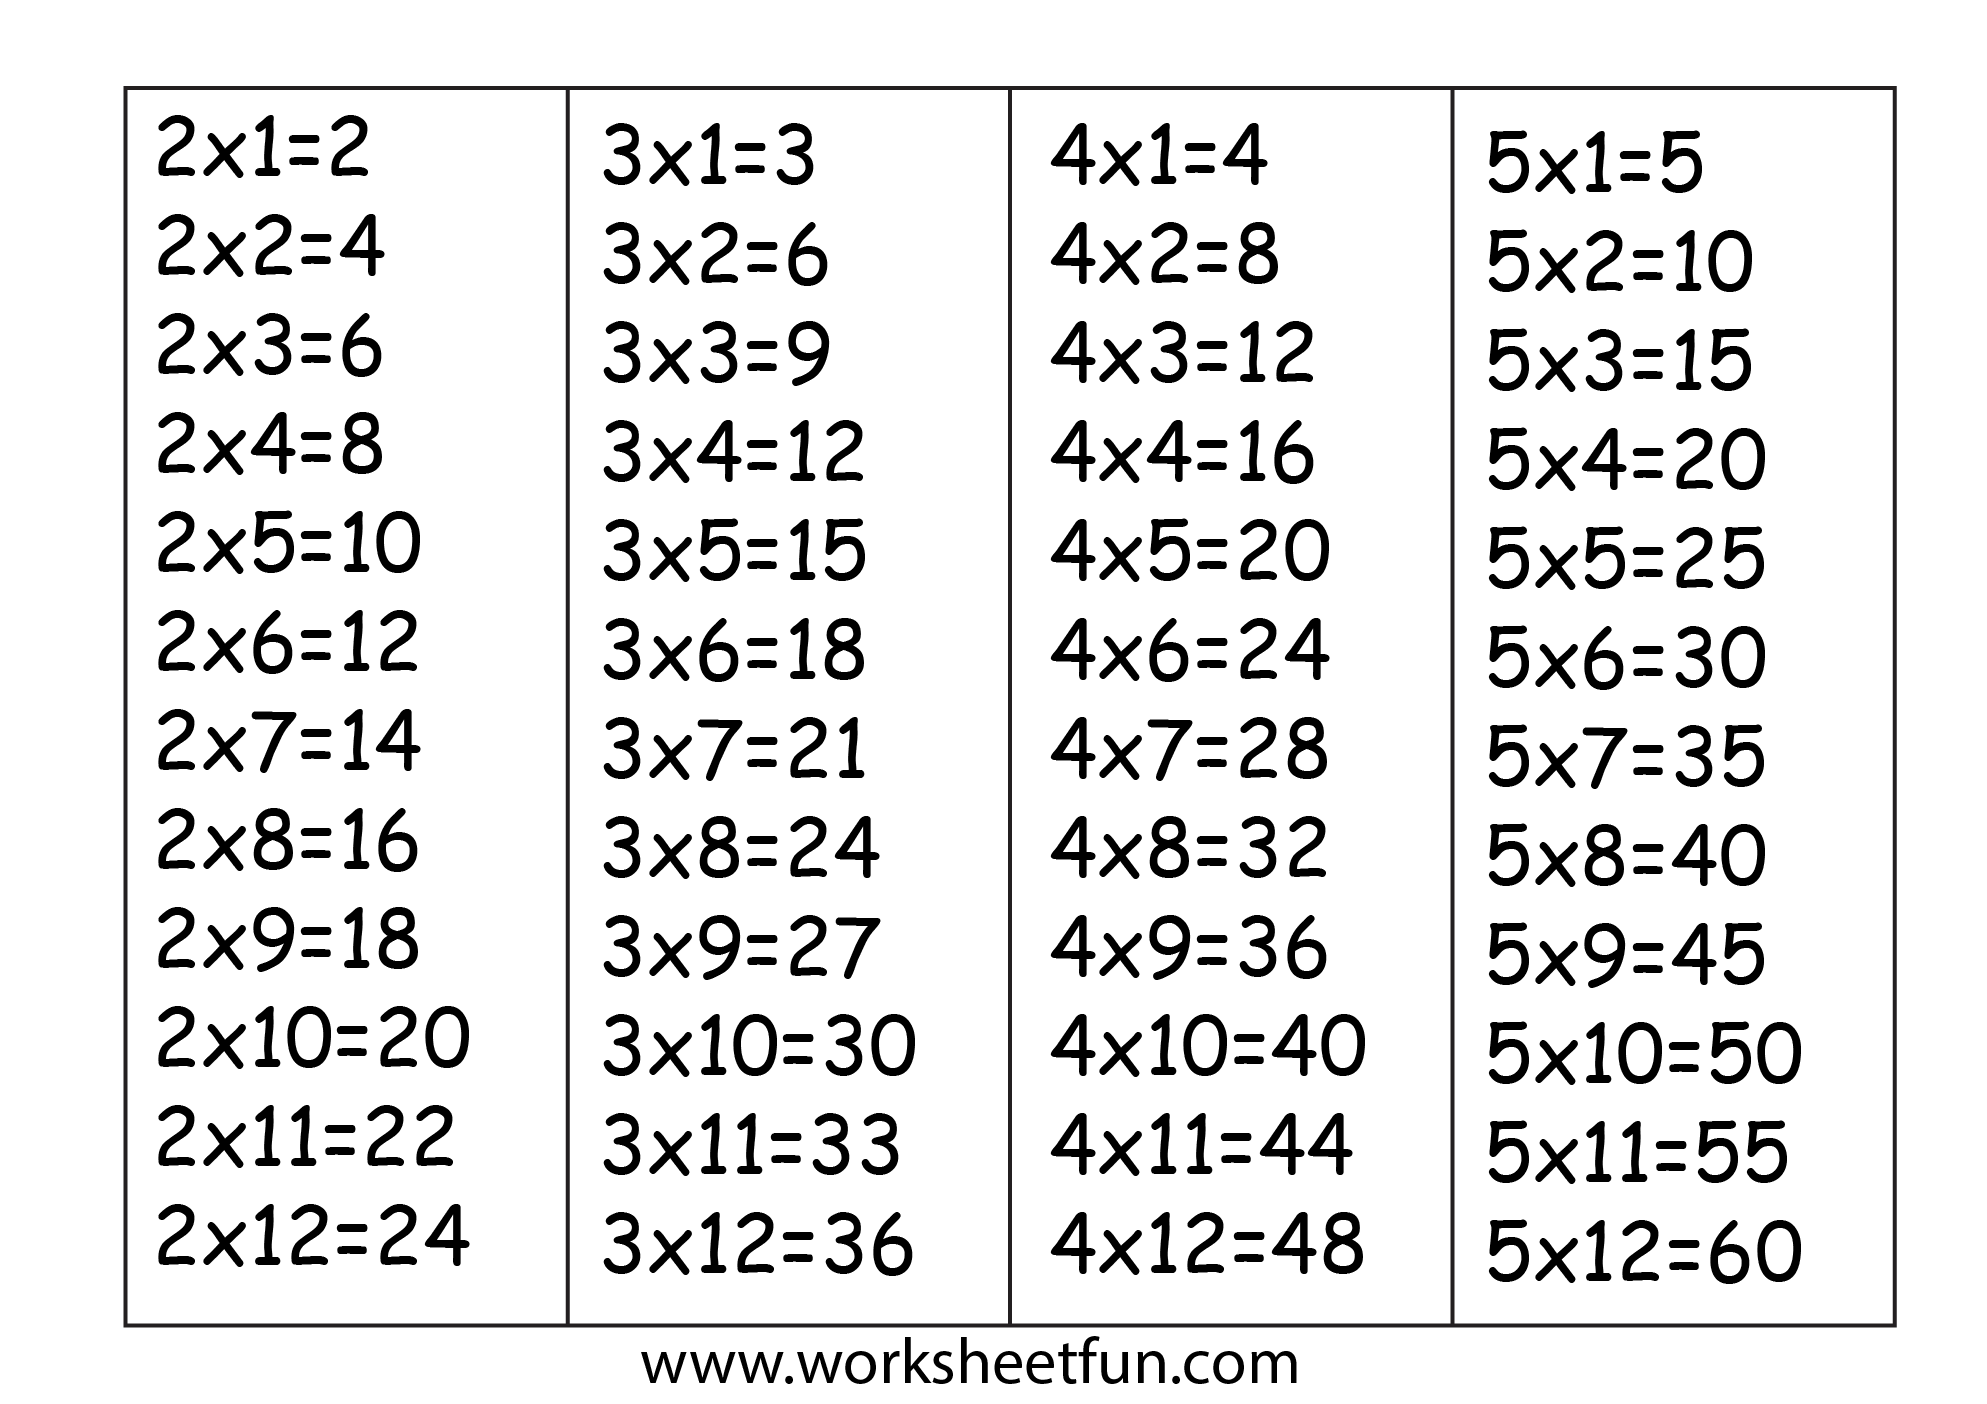 Таблица на 6 7 8 9. Таблица умножения на 2 3 4. Таблица умножения на 2 и 3. Таблица на 2 3 4. Таблица на 2 и 3.